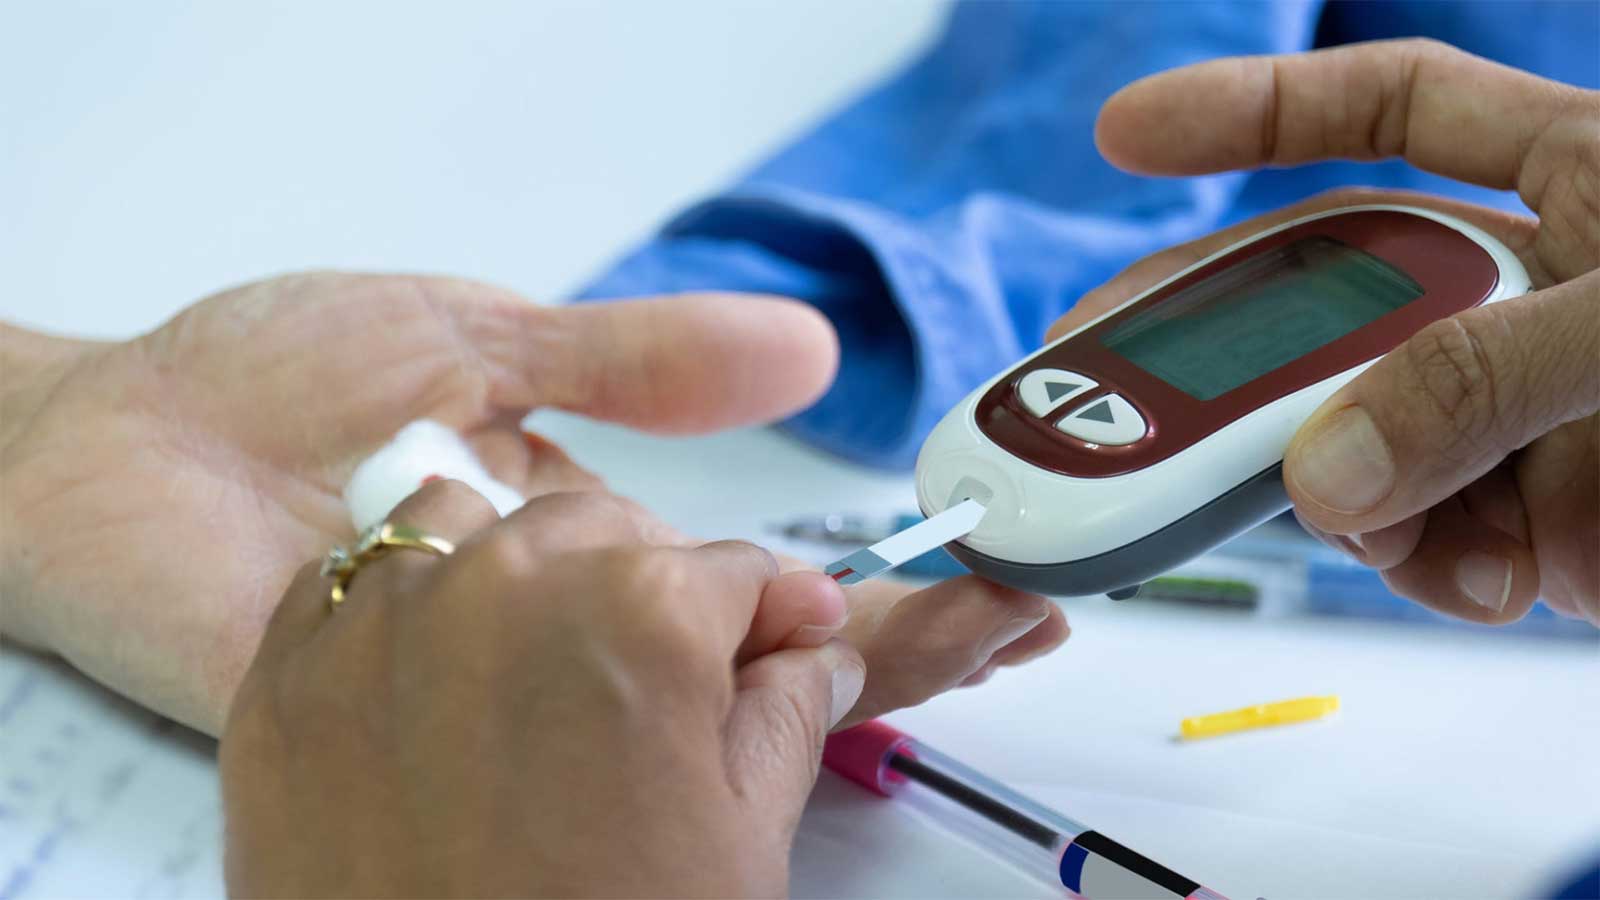 Основные показатели, которые нужно контролировать при диабете